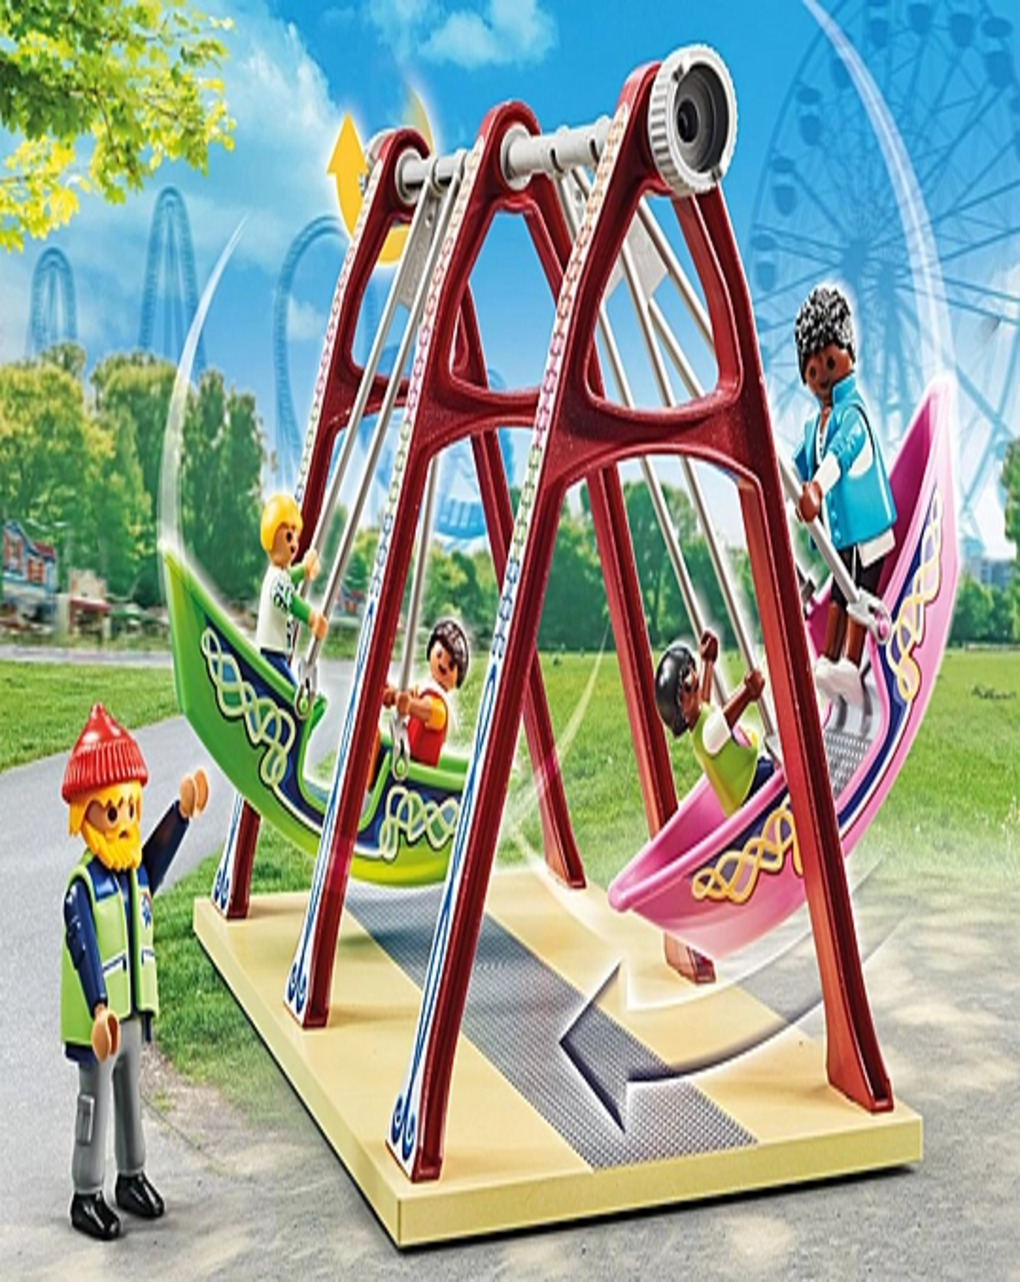 Playmobil  λούνα πάρκ 71452 - Playmobil